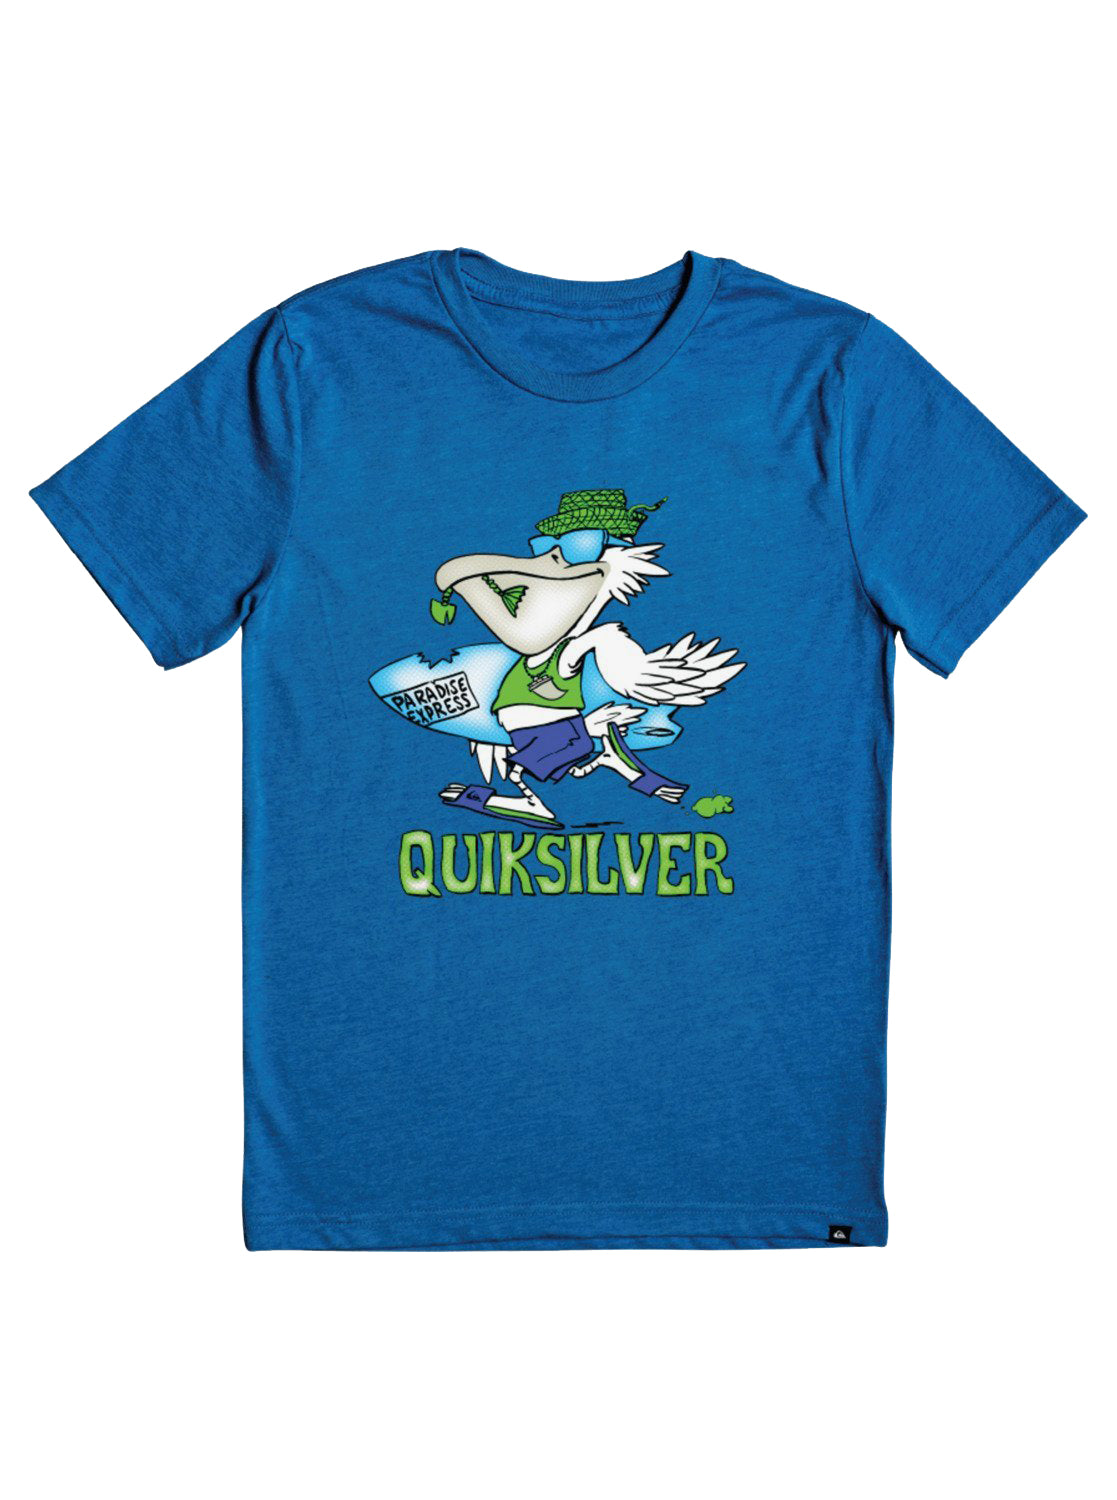 Quiksilver Kids Pelican Shred SS Tee BQVH 4